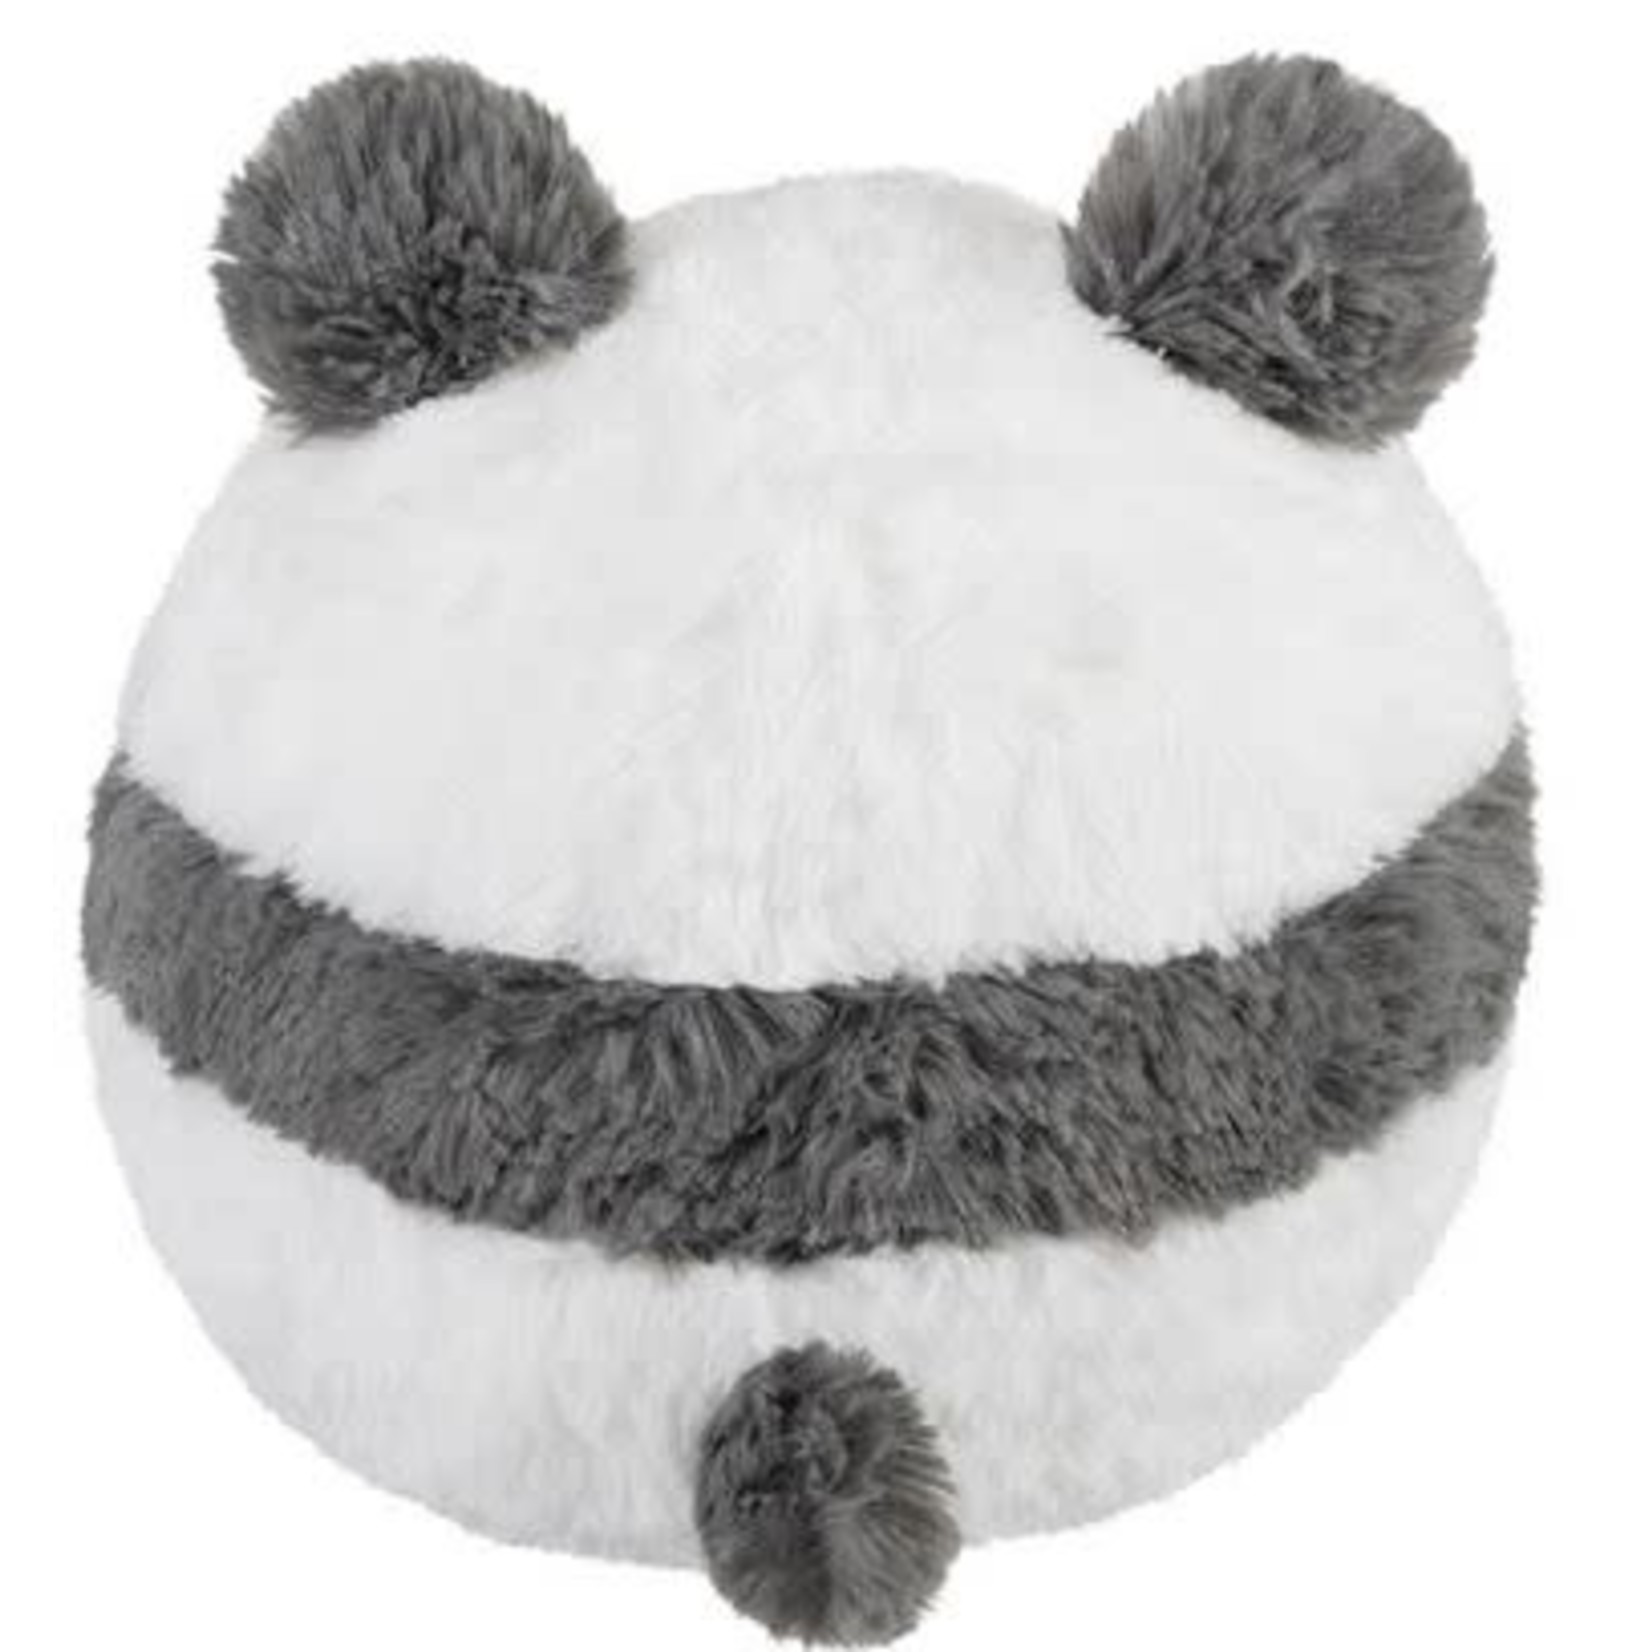 Squishable Mini: Baby Panda III